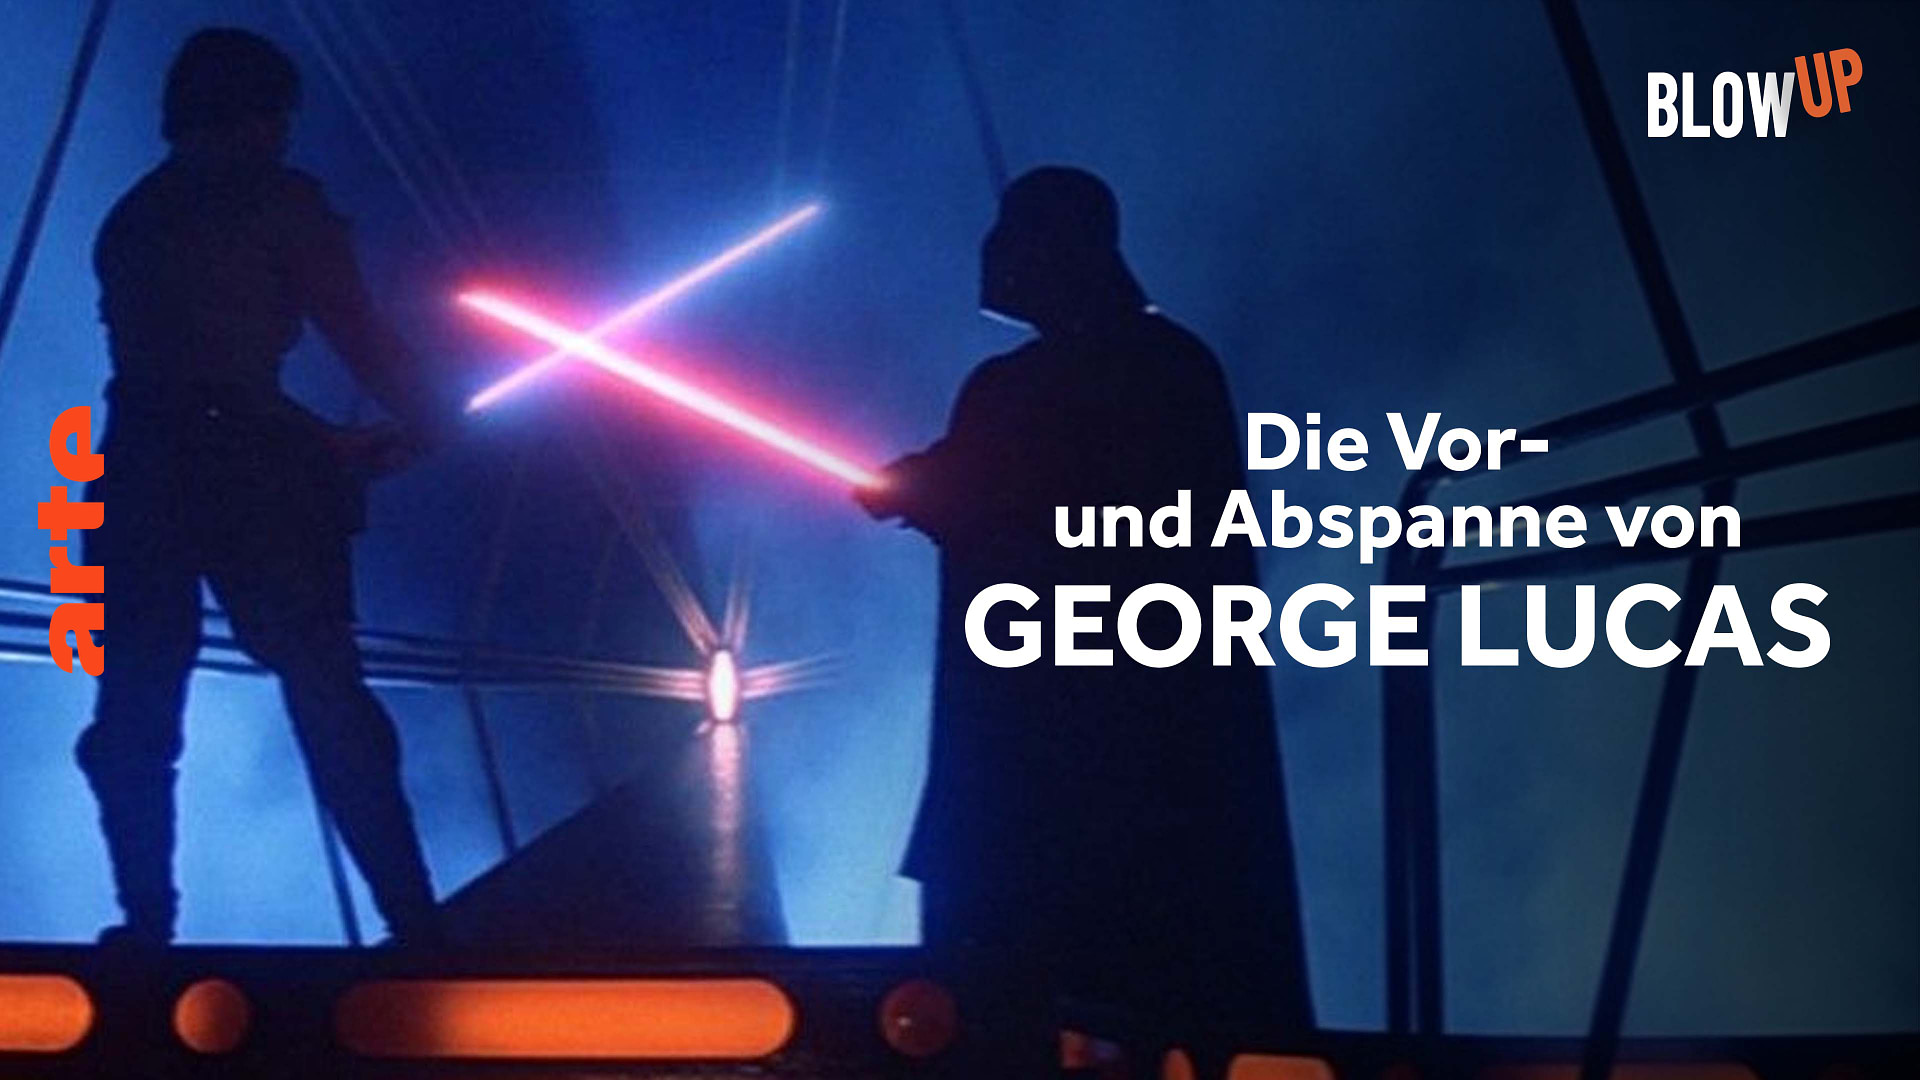 Blow up - Die Vor- und Abspanne von George Lucas